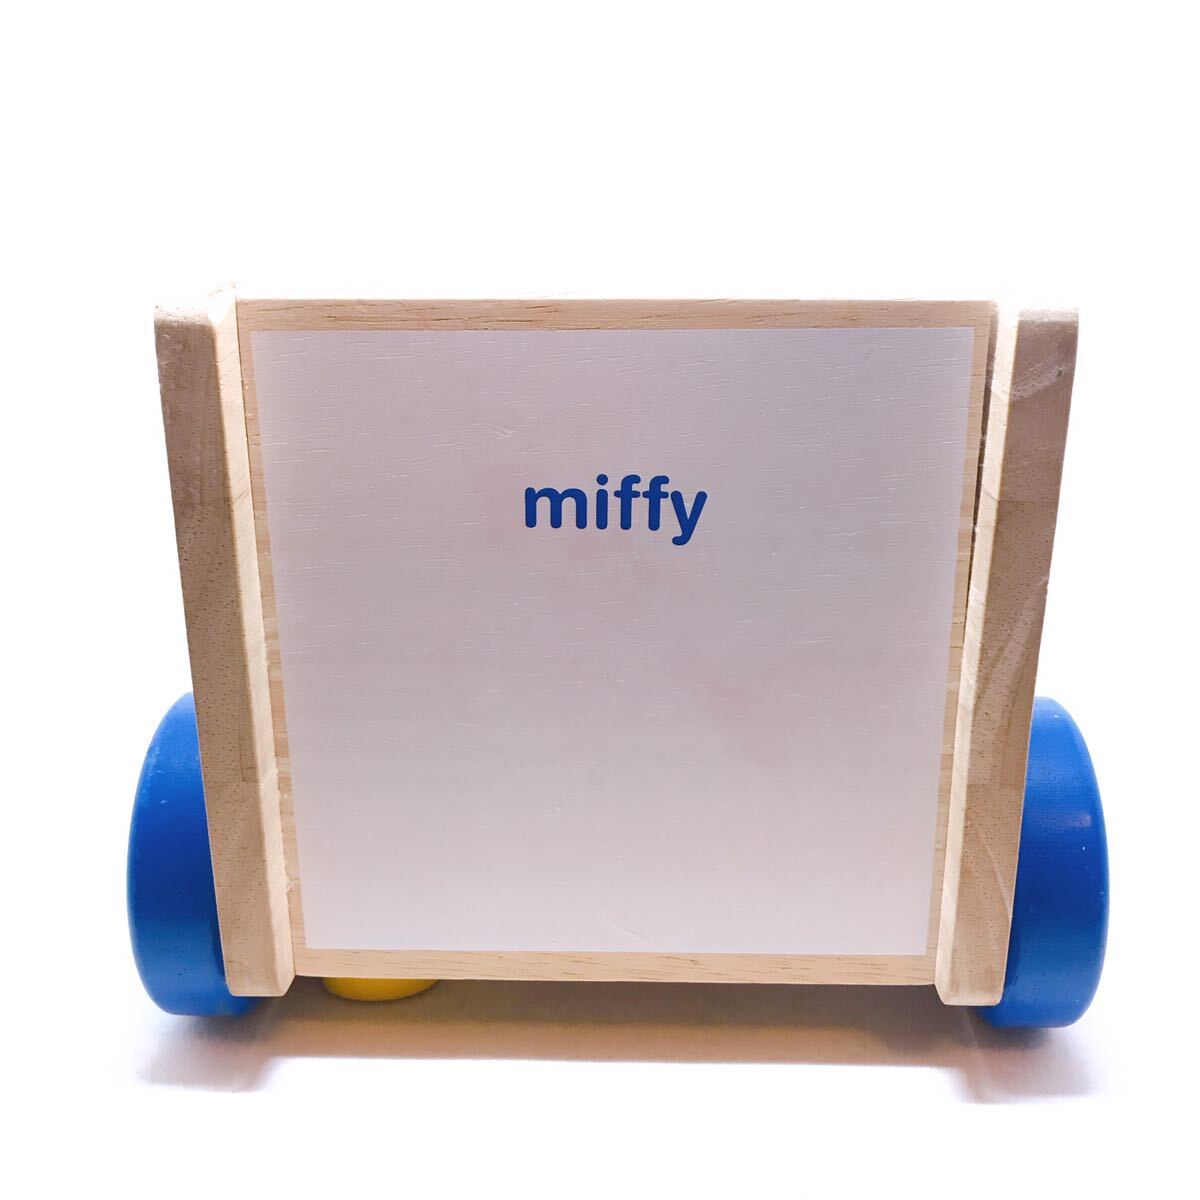 ミッフィー【miffy】ブルーナ DickBruna 知育玩具 おさんぽパズルカー 積み木 木製玩具 USED_薄っすらピンク汚れ